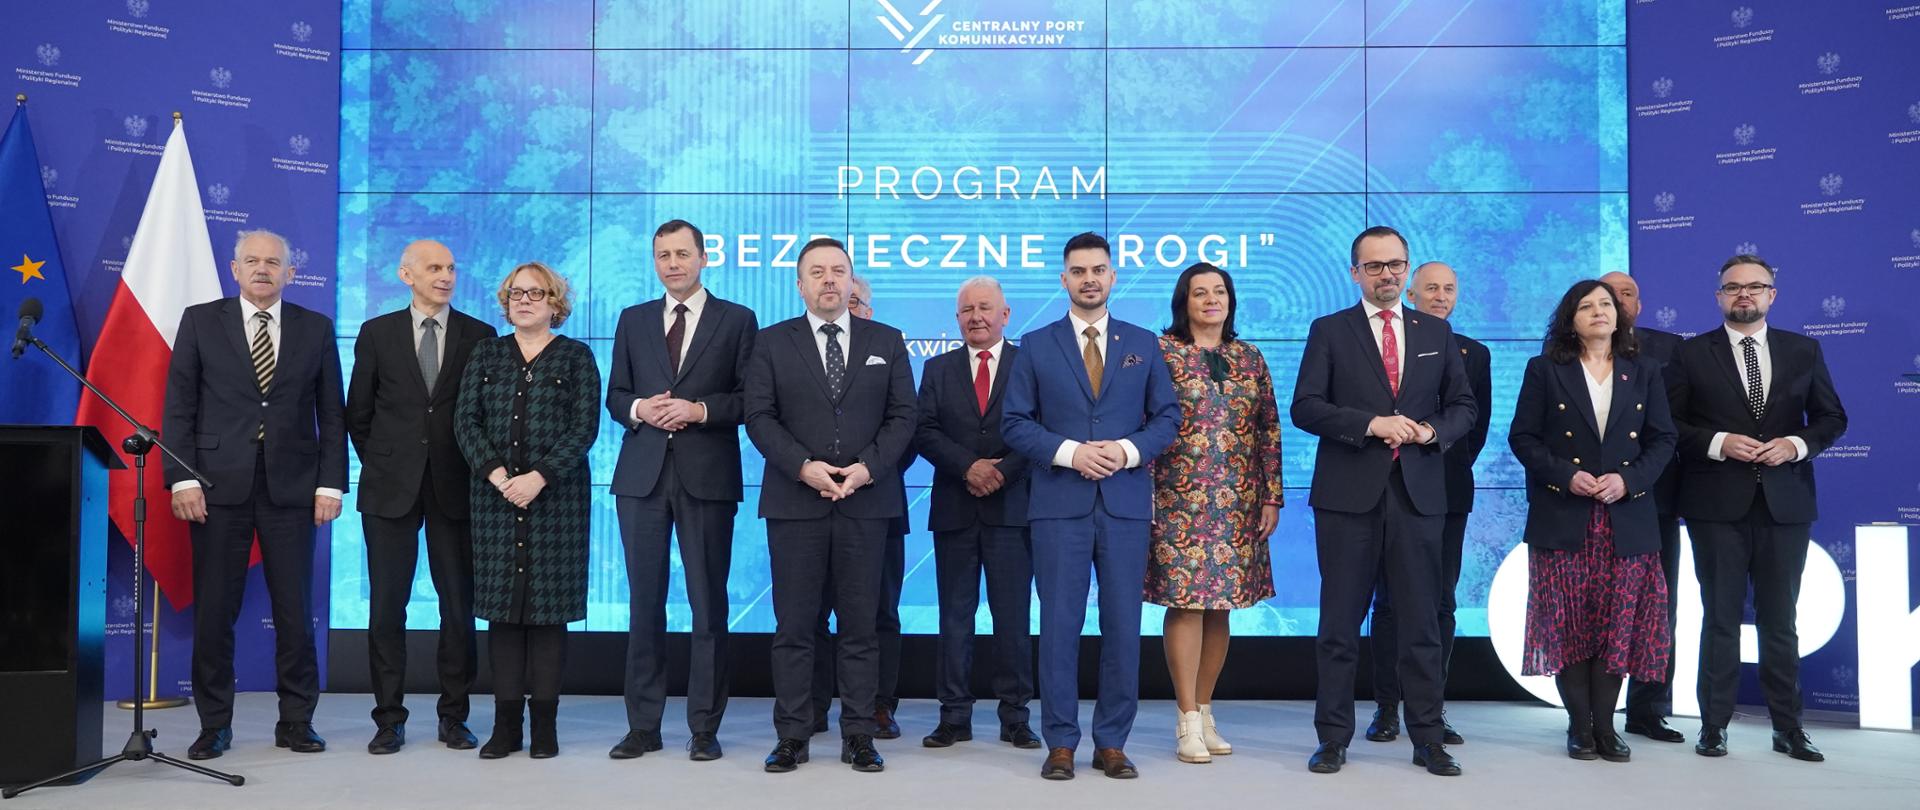 Trzynaście osób stoi obok siebie na scenie. Piąty z prawej stoi wiceminister Marcin Horała.